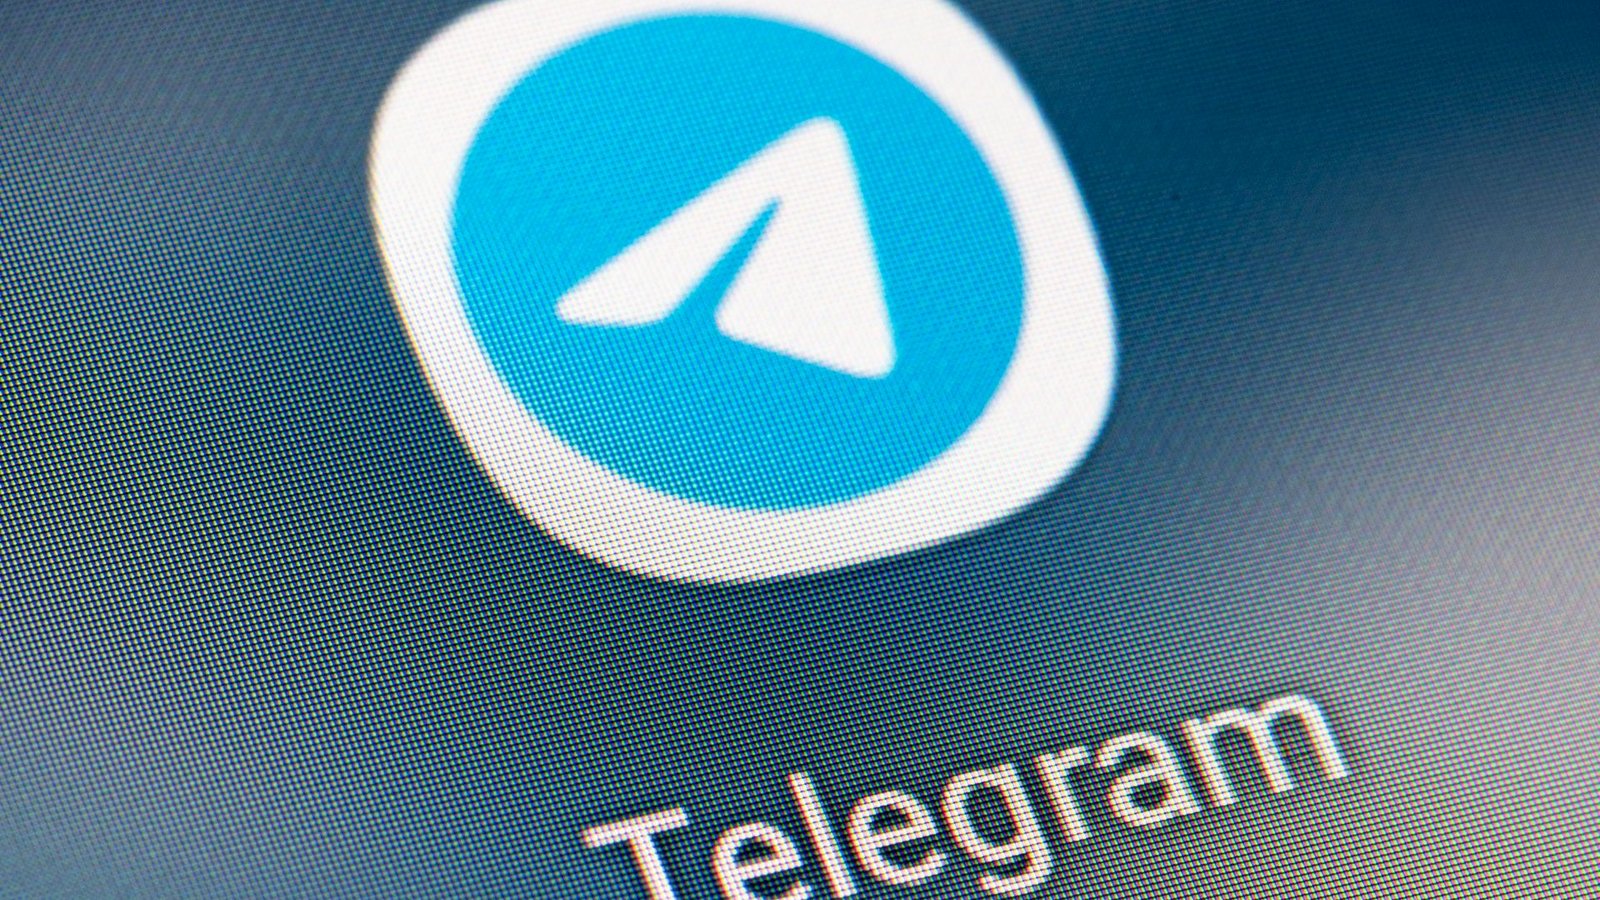 Die Justiz in Spanien hat die Nachrichten-App Telegram vorübergehend landesweit gesperrt.Foto: Fabian Sommer/dpa